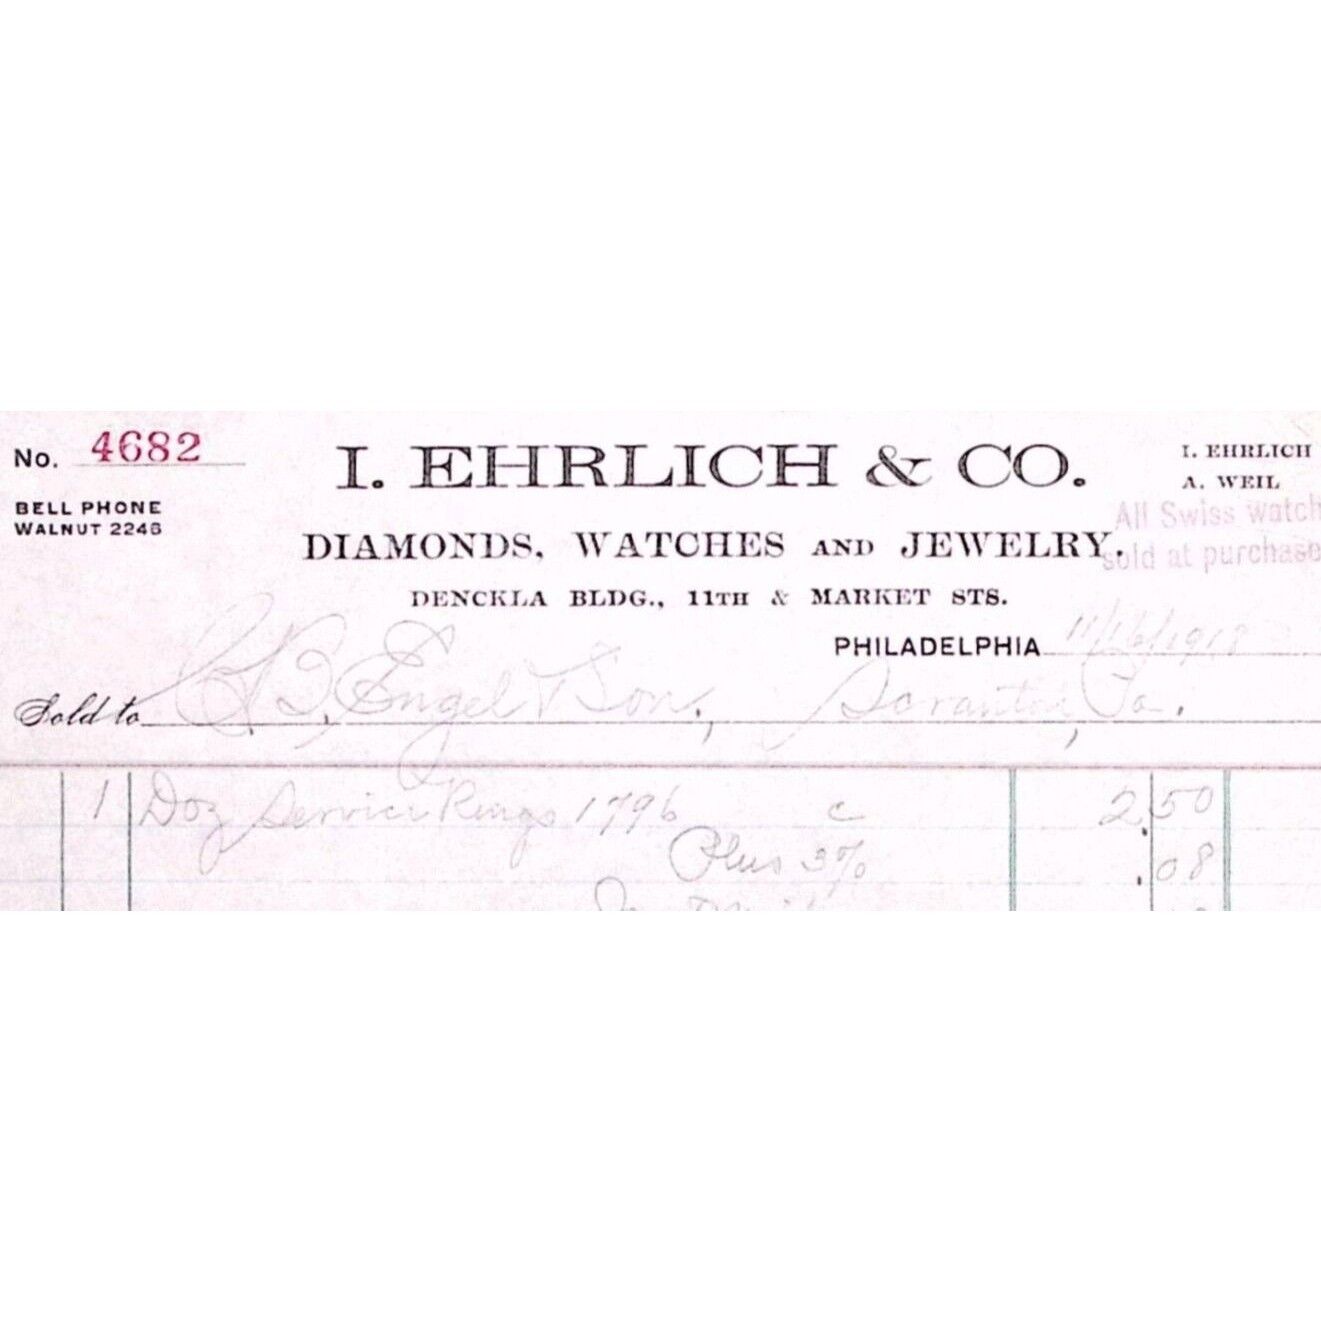 1918 PHILADELPHIA I EHRLICH & CO DIAMONDS WATCHES JEWELRY BILLHEAD INVOICE  Z161